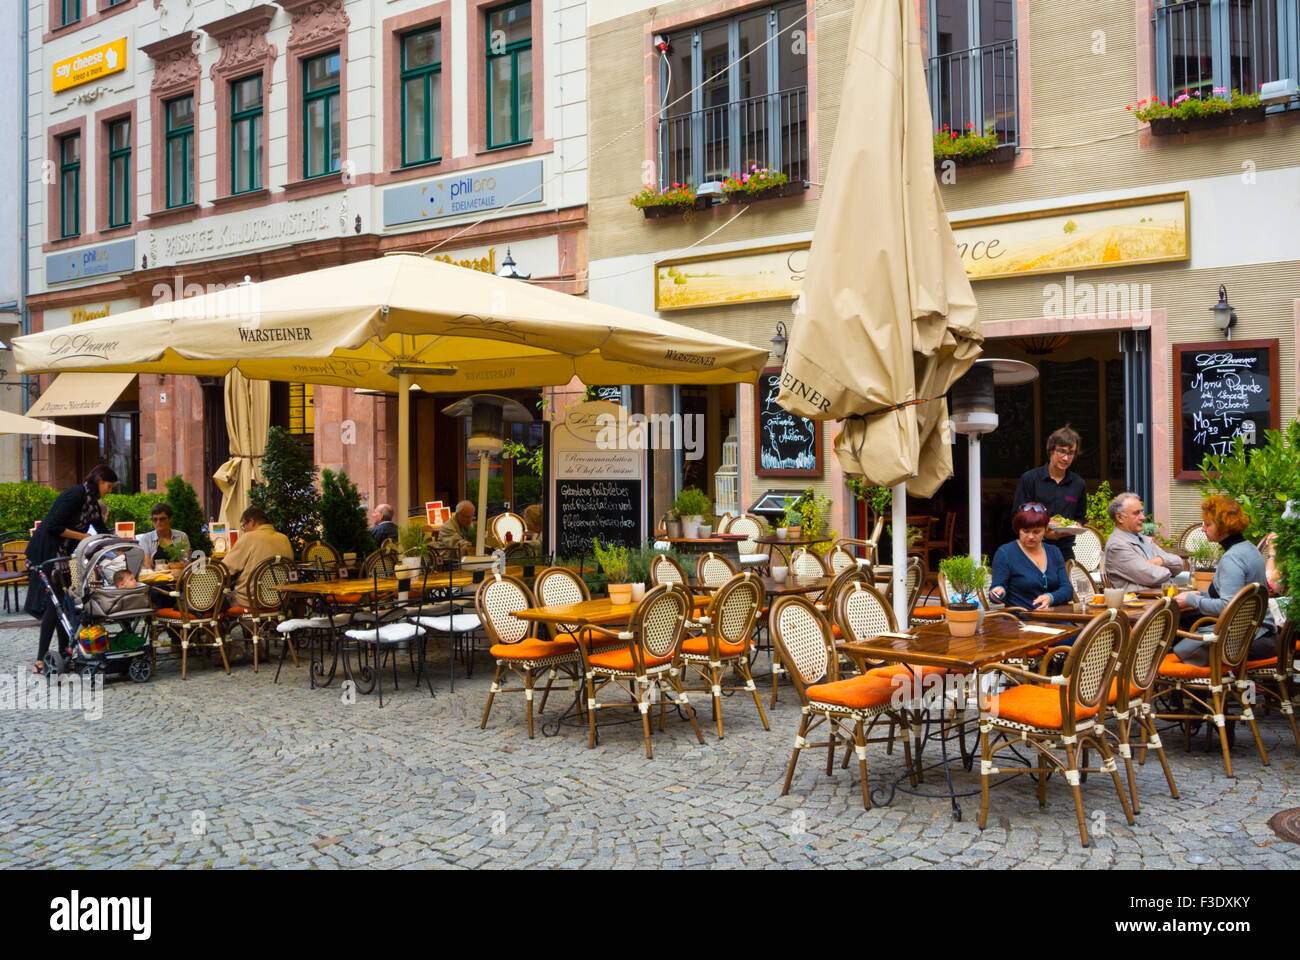 Restaurant terraces, Kleine Fleischergasse, Altstadt, old town, Leipzig, Saxony, Germany Stock Photo